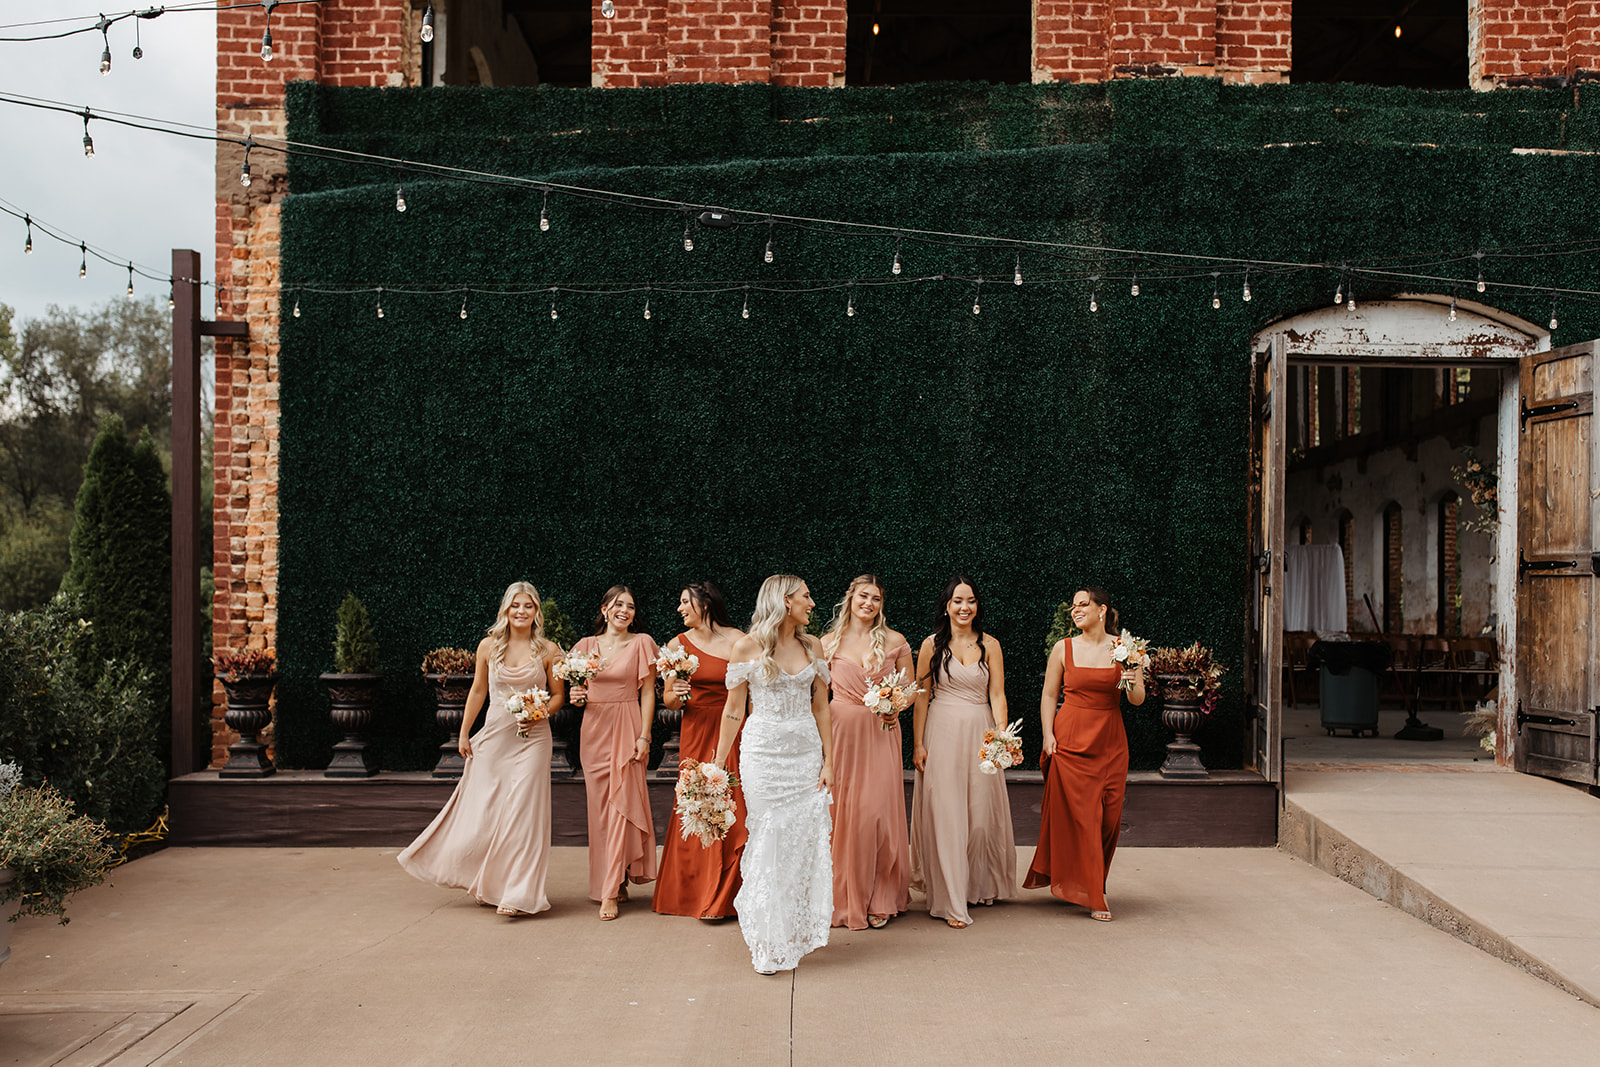 the bridesmaids walking towards the camera